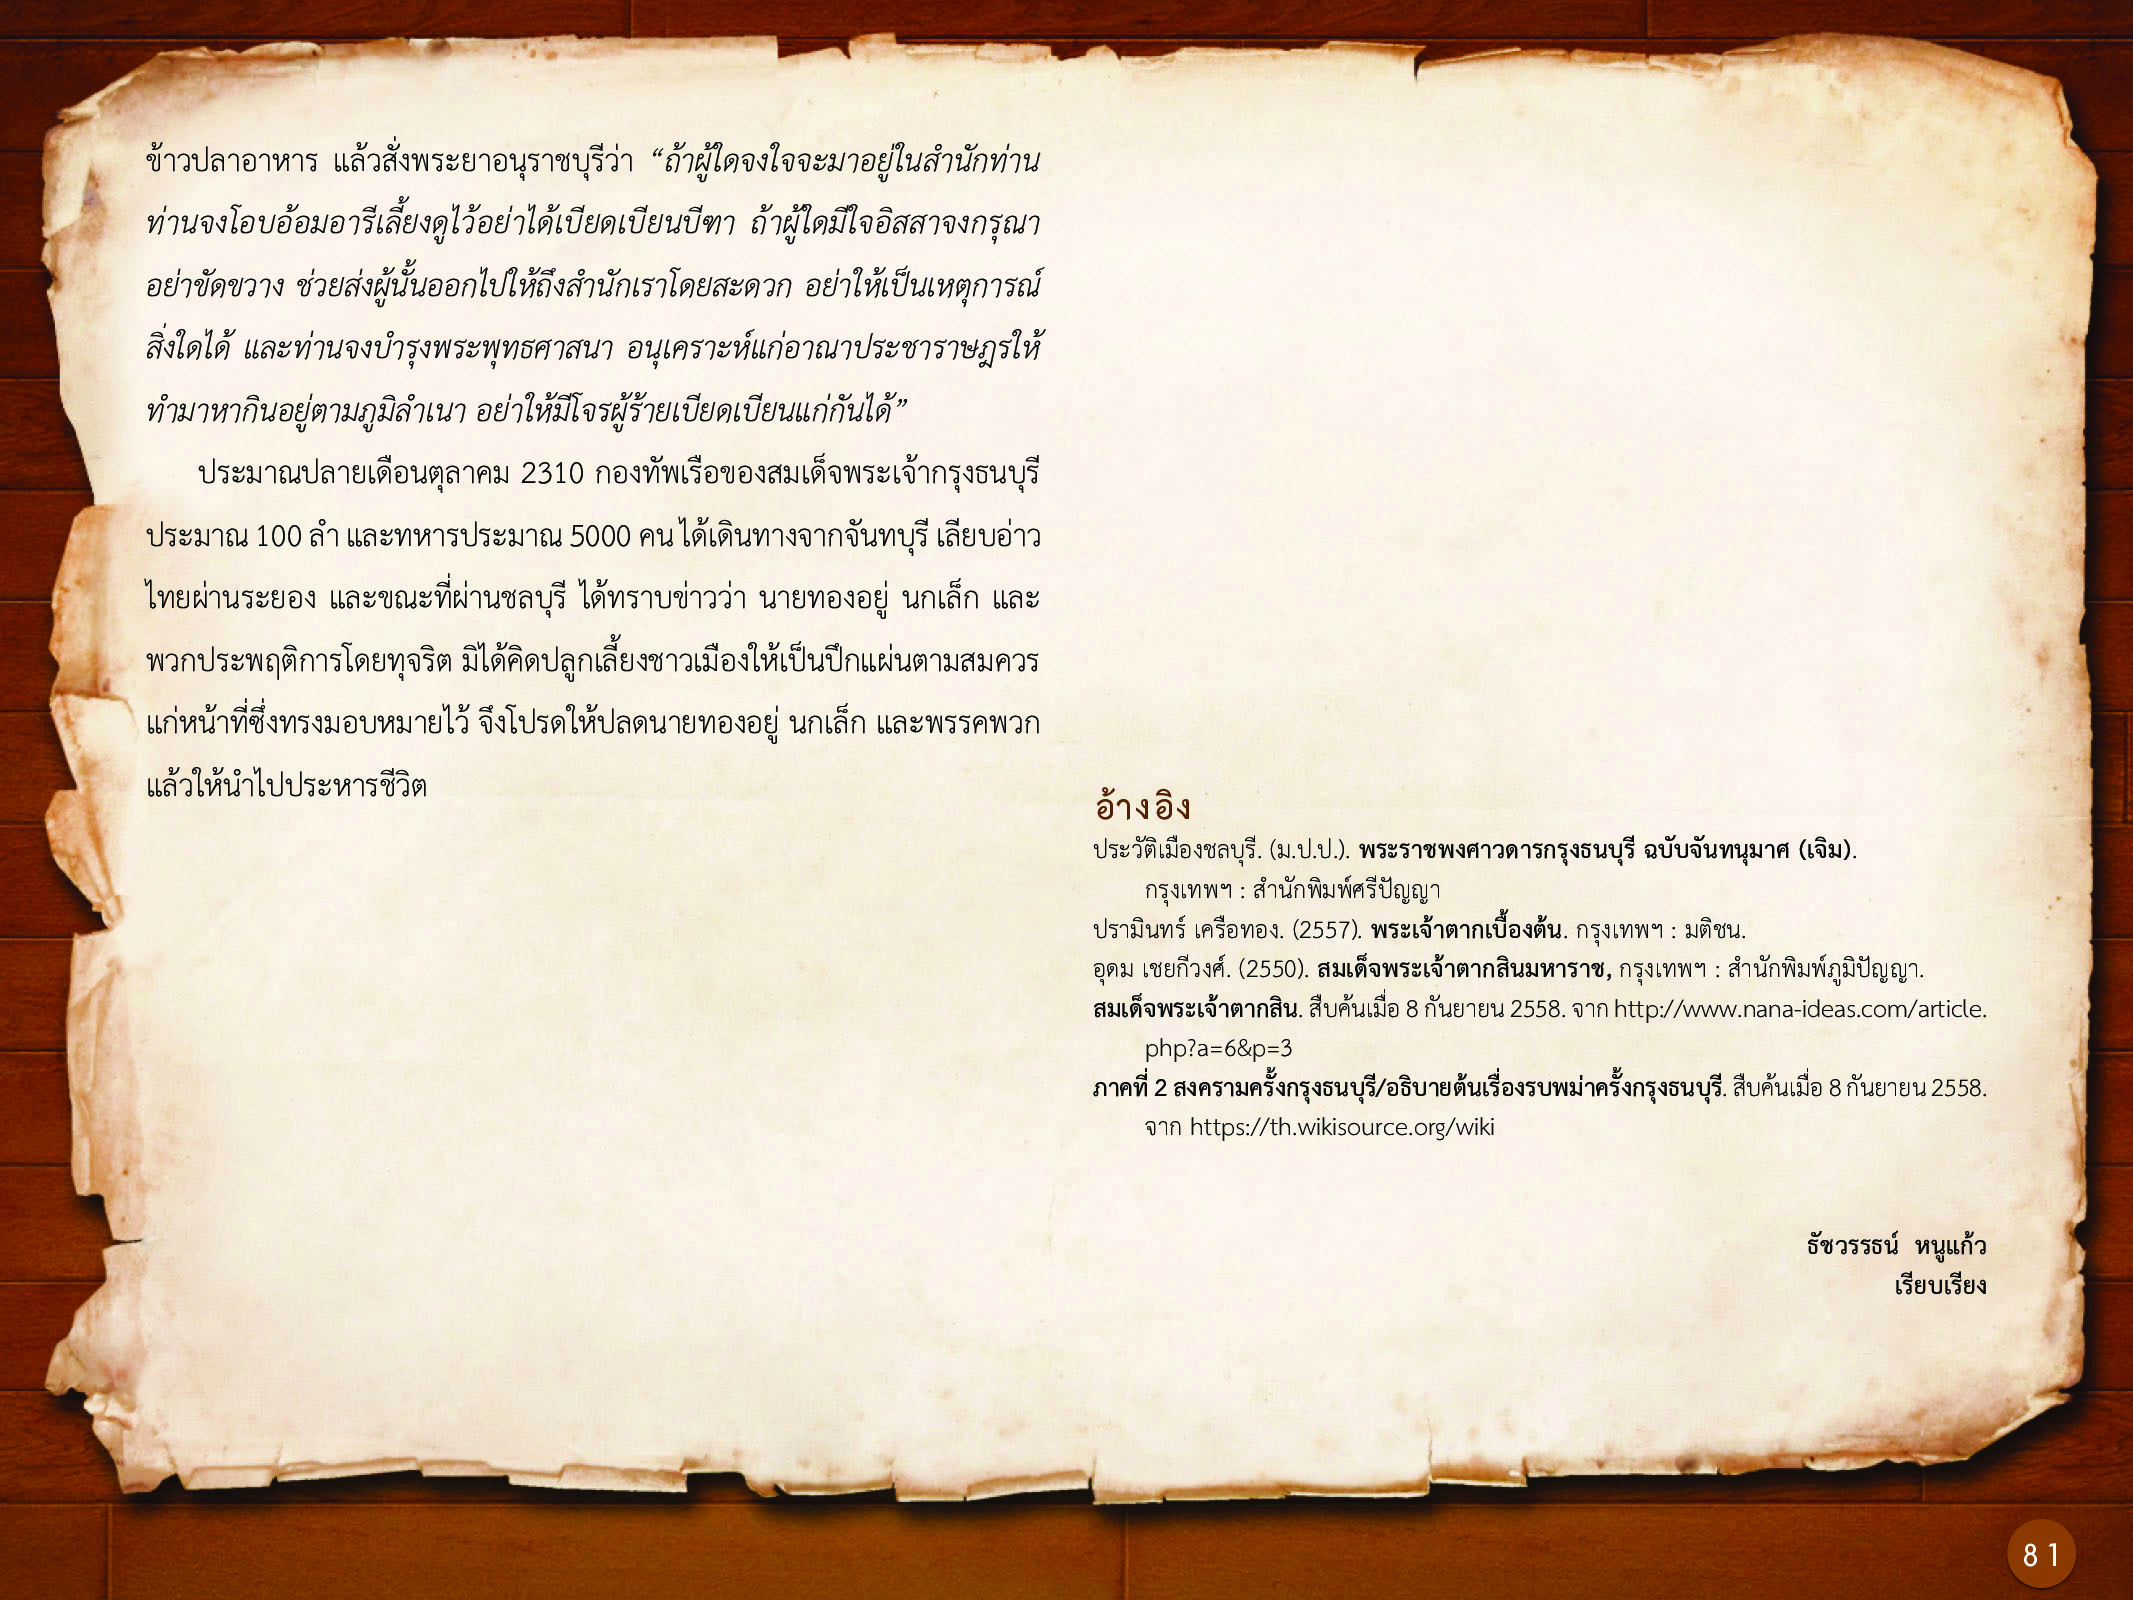 ประวัติศาสตร์กรุงธนบุรี ./images/history_dhonburi/81.jpg